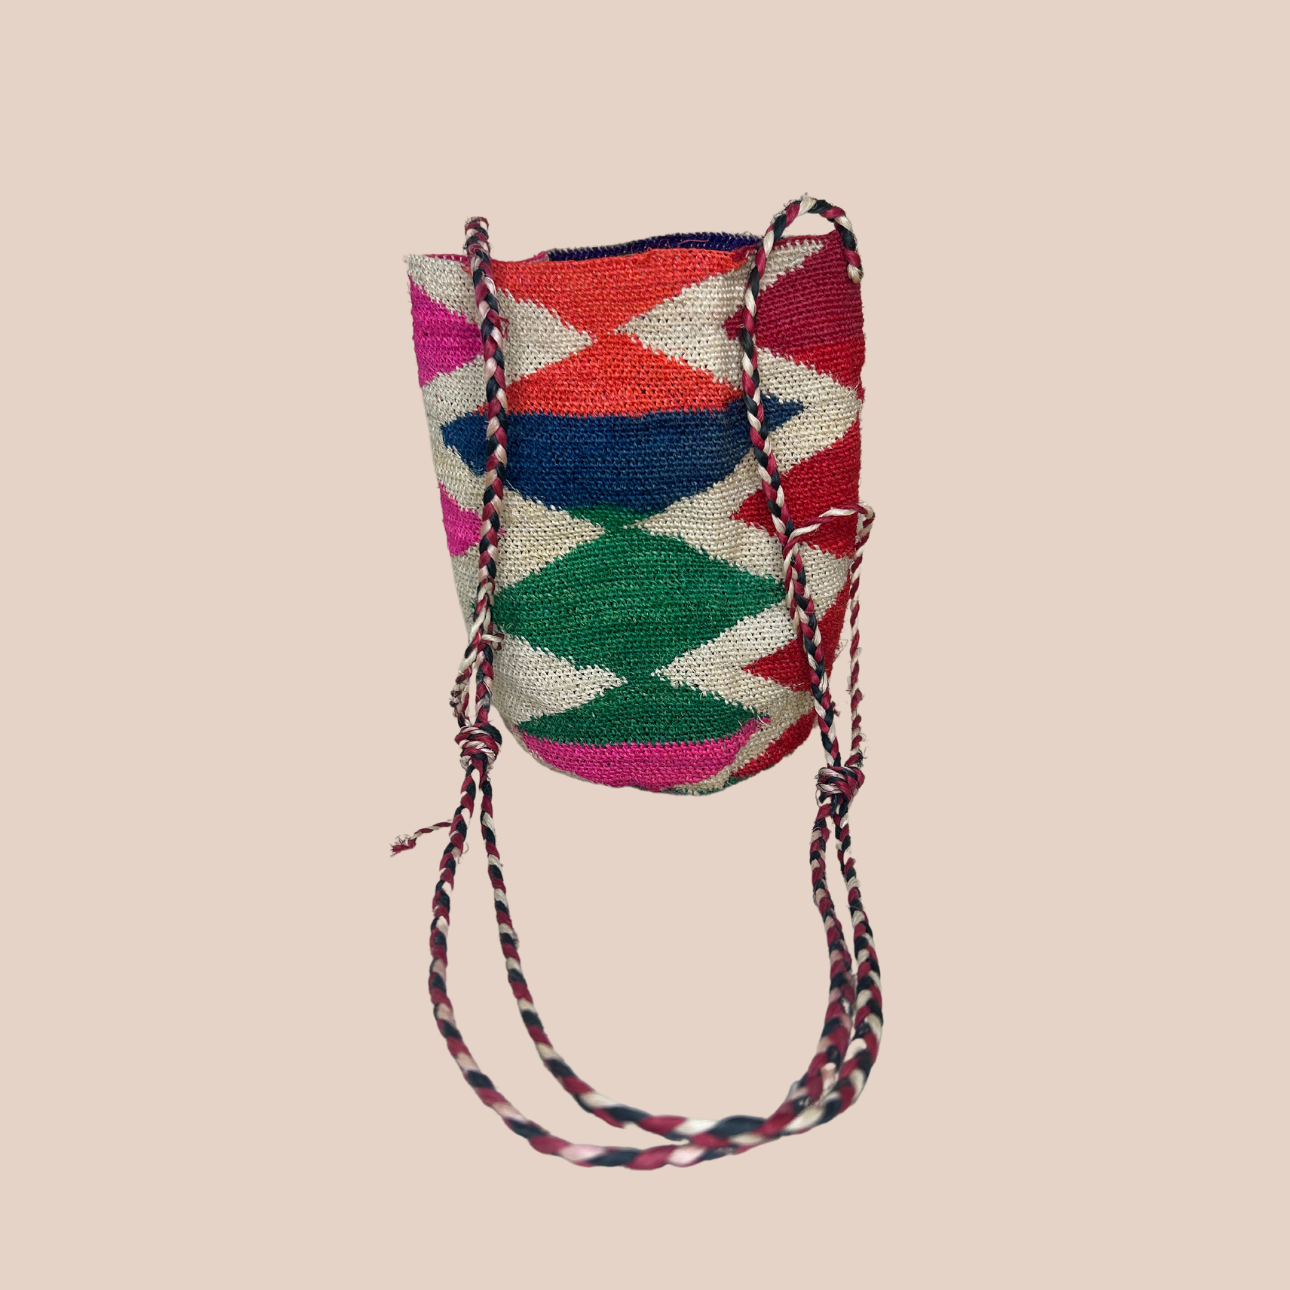 Un sac chiqui en fibres de cactus, arborant des couleurs vives et audacieuses